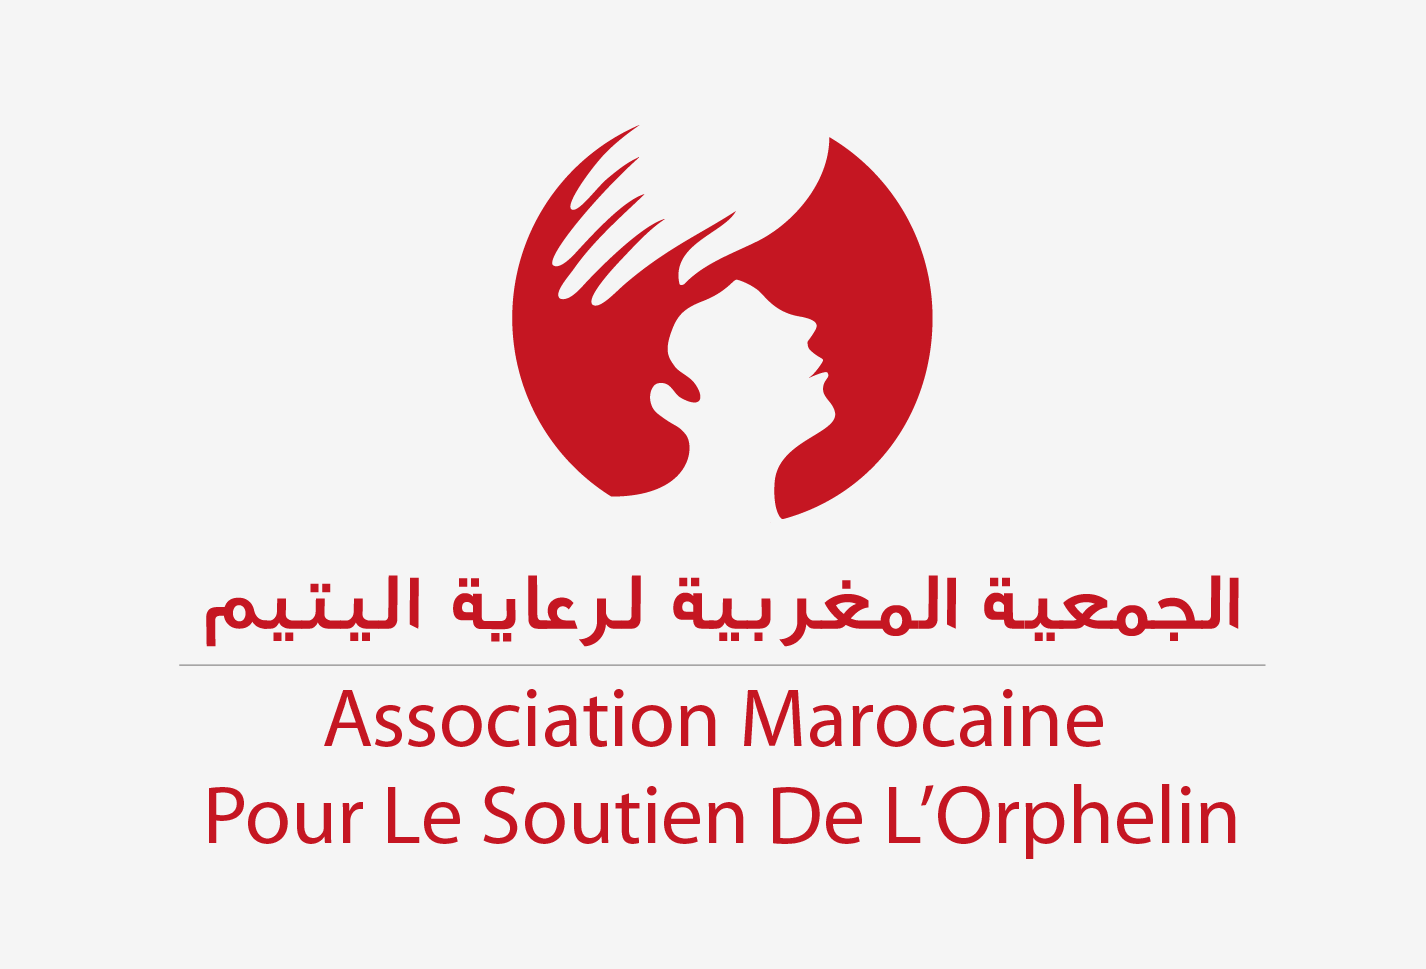 Association Marocaine pour le Soutien de l’Orphelin 